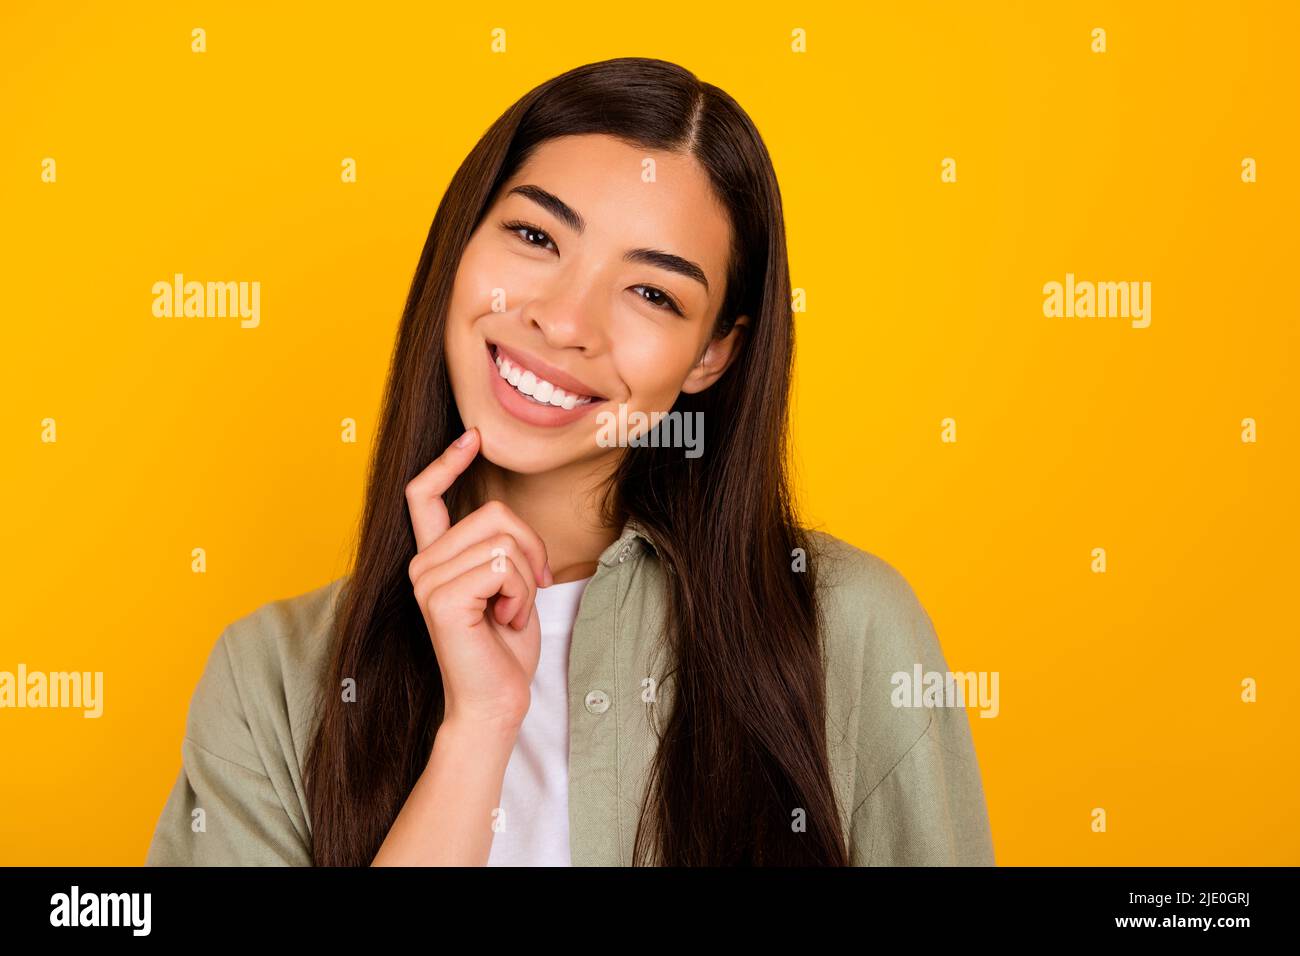 Foto von wunderschönen positiven Person Finger berühren Kinn toothy strahlendes Lächeln isoliert auf gelbem Hintergrund Stockfoto